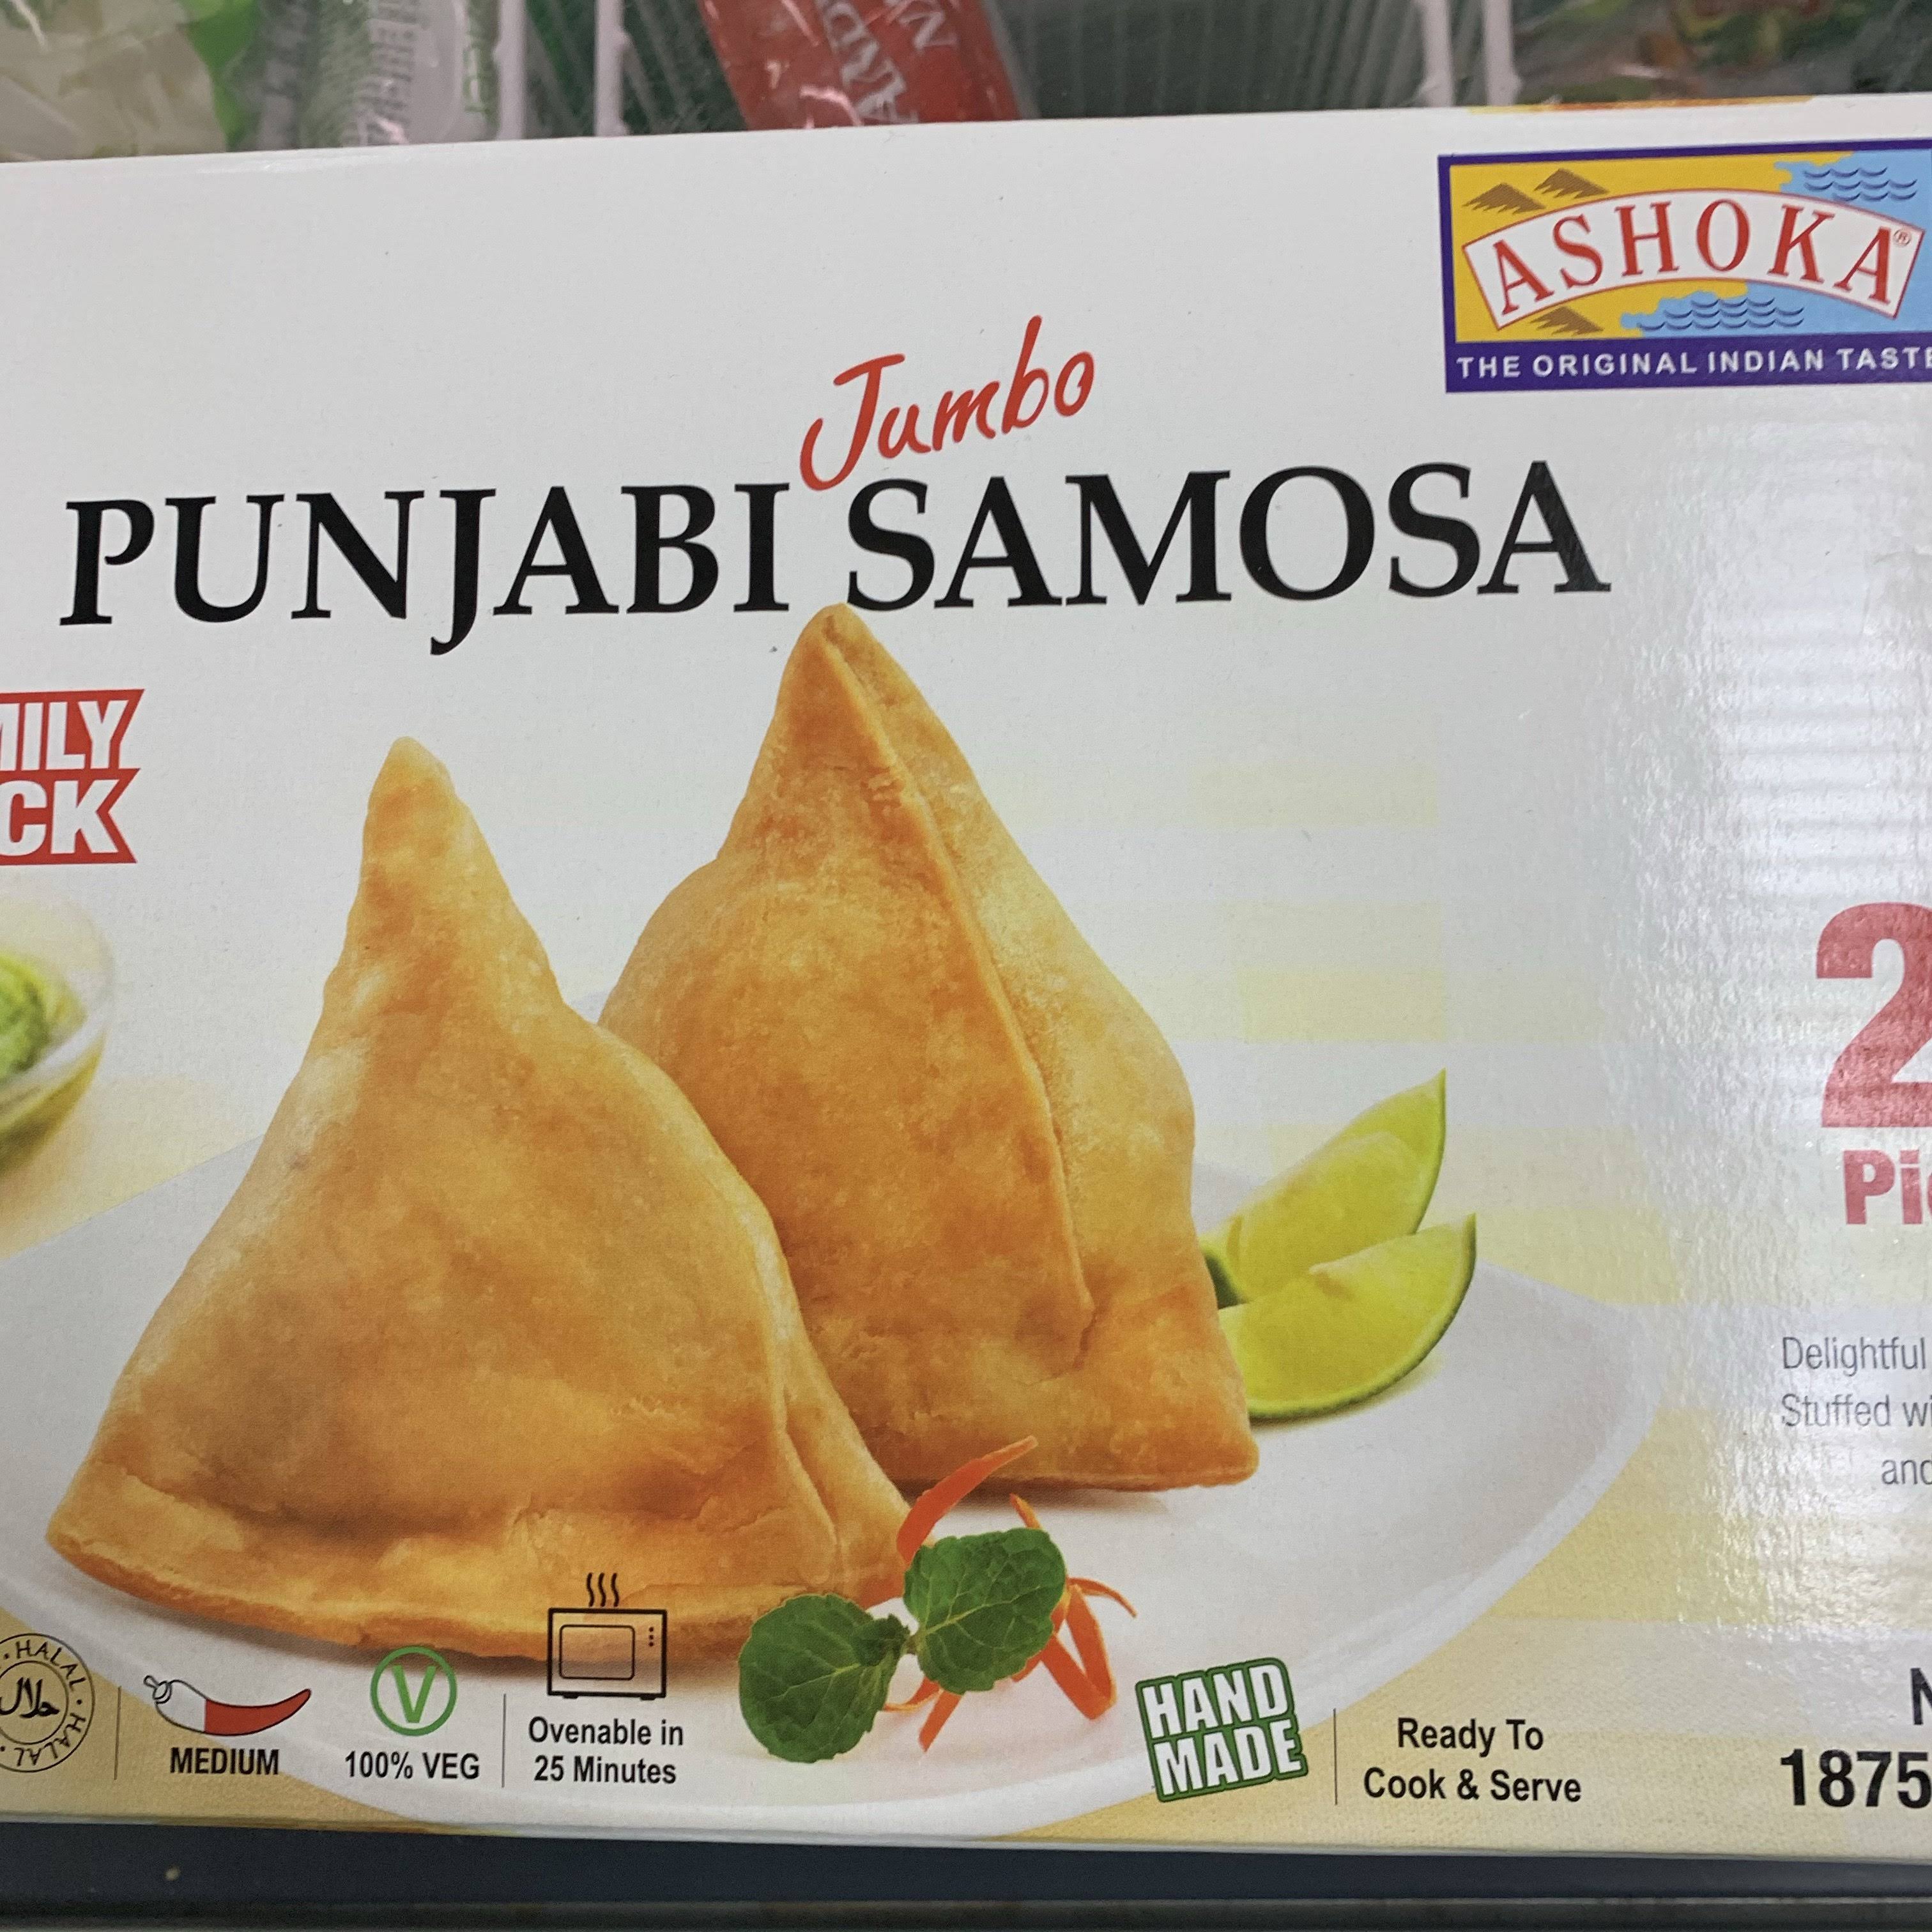 Ashoka Punjabi Samosa 25 PC